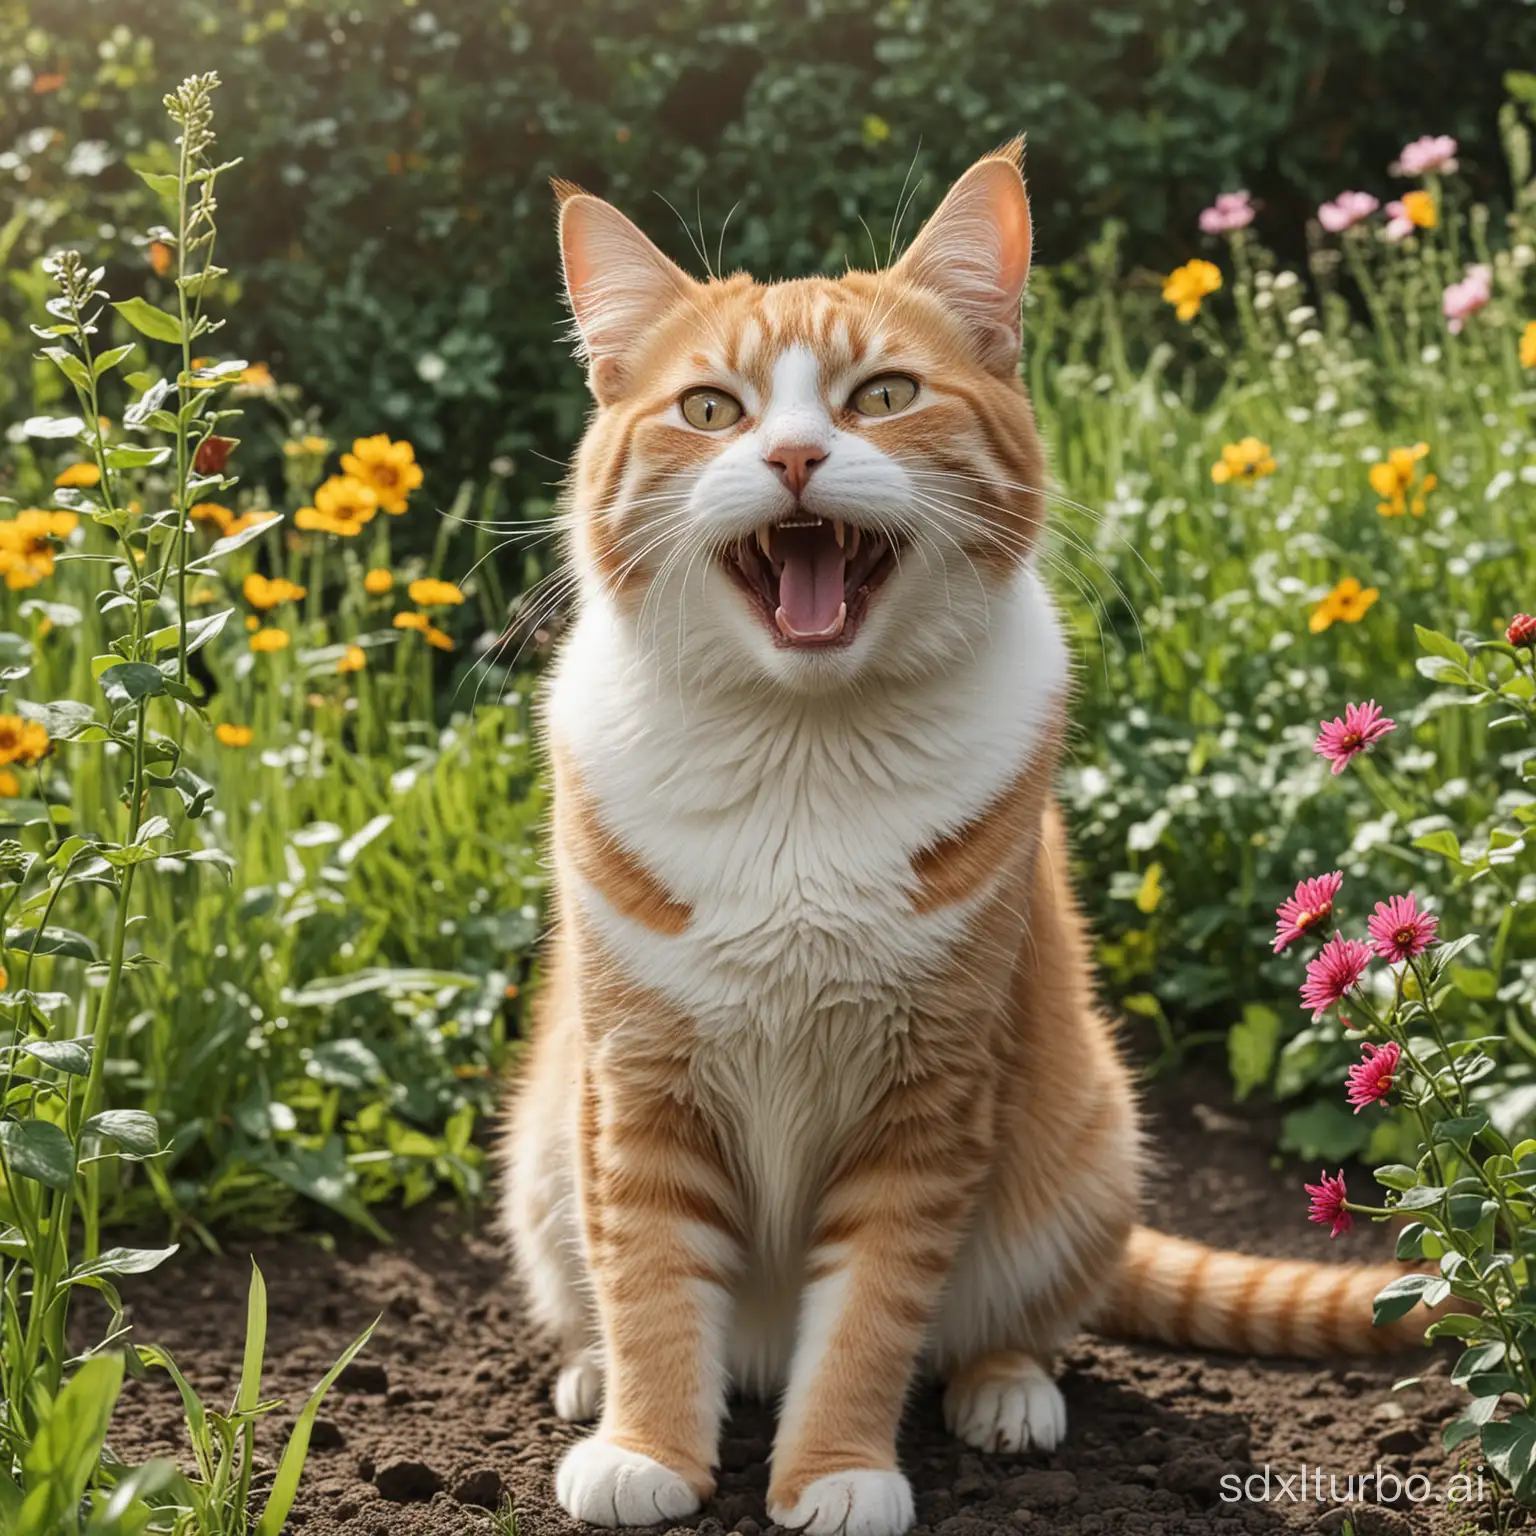 a happy cat in garden